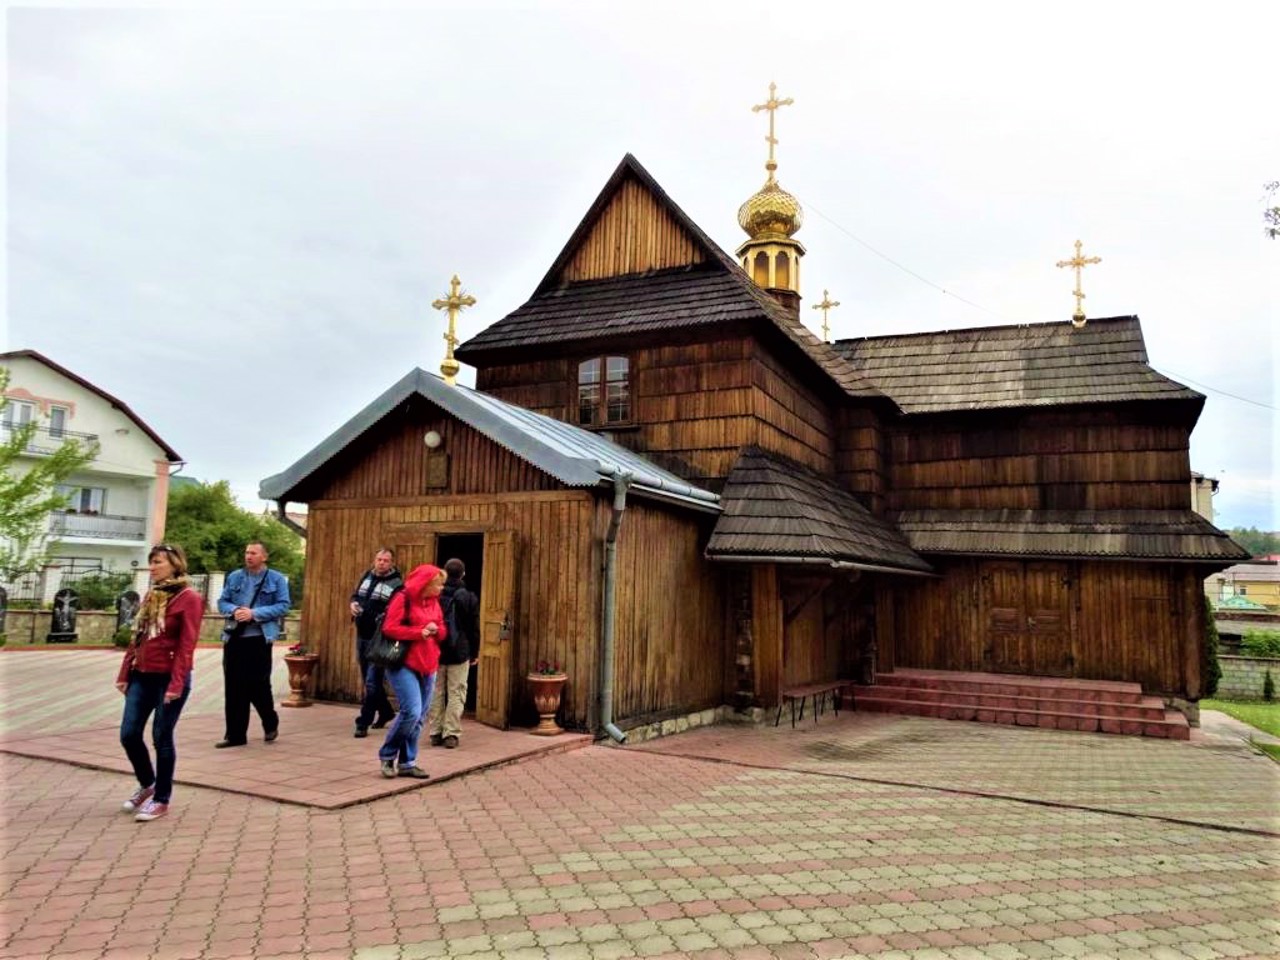 Успенская церковь, Чортков